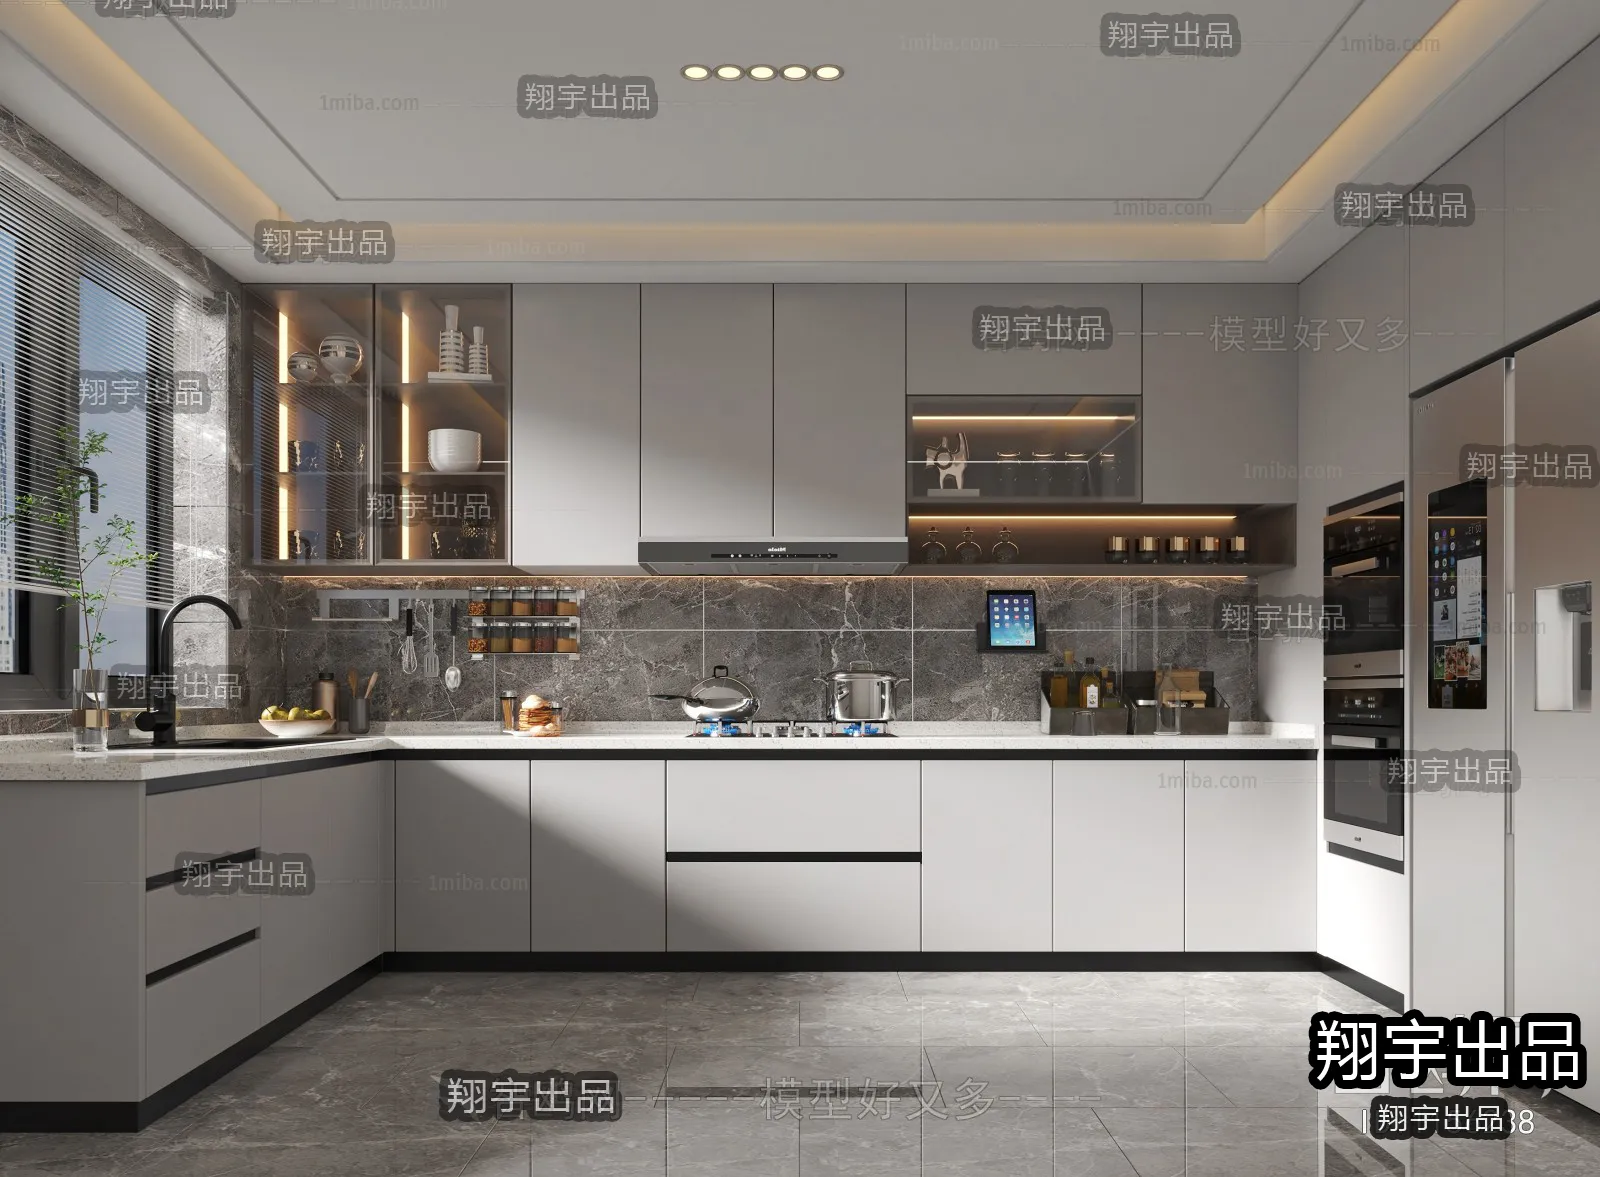 Kitchen – Modern Interior Design – 3D Models – 011